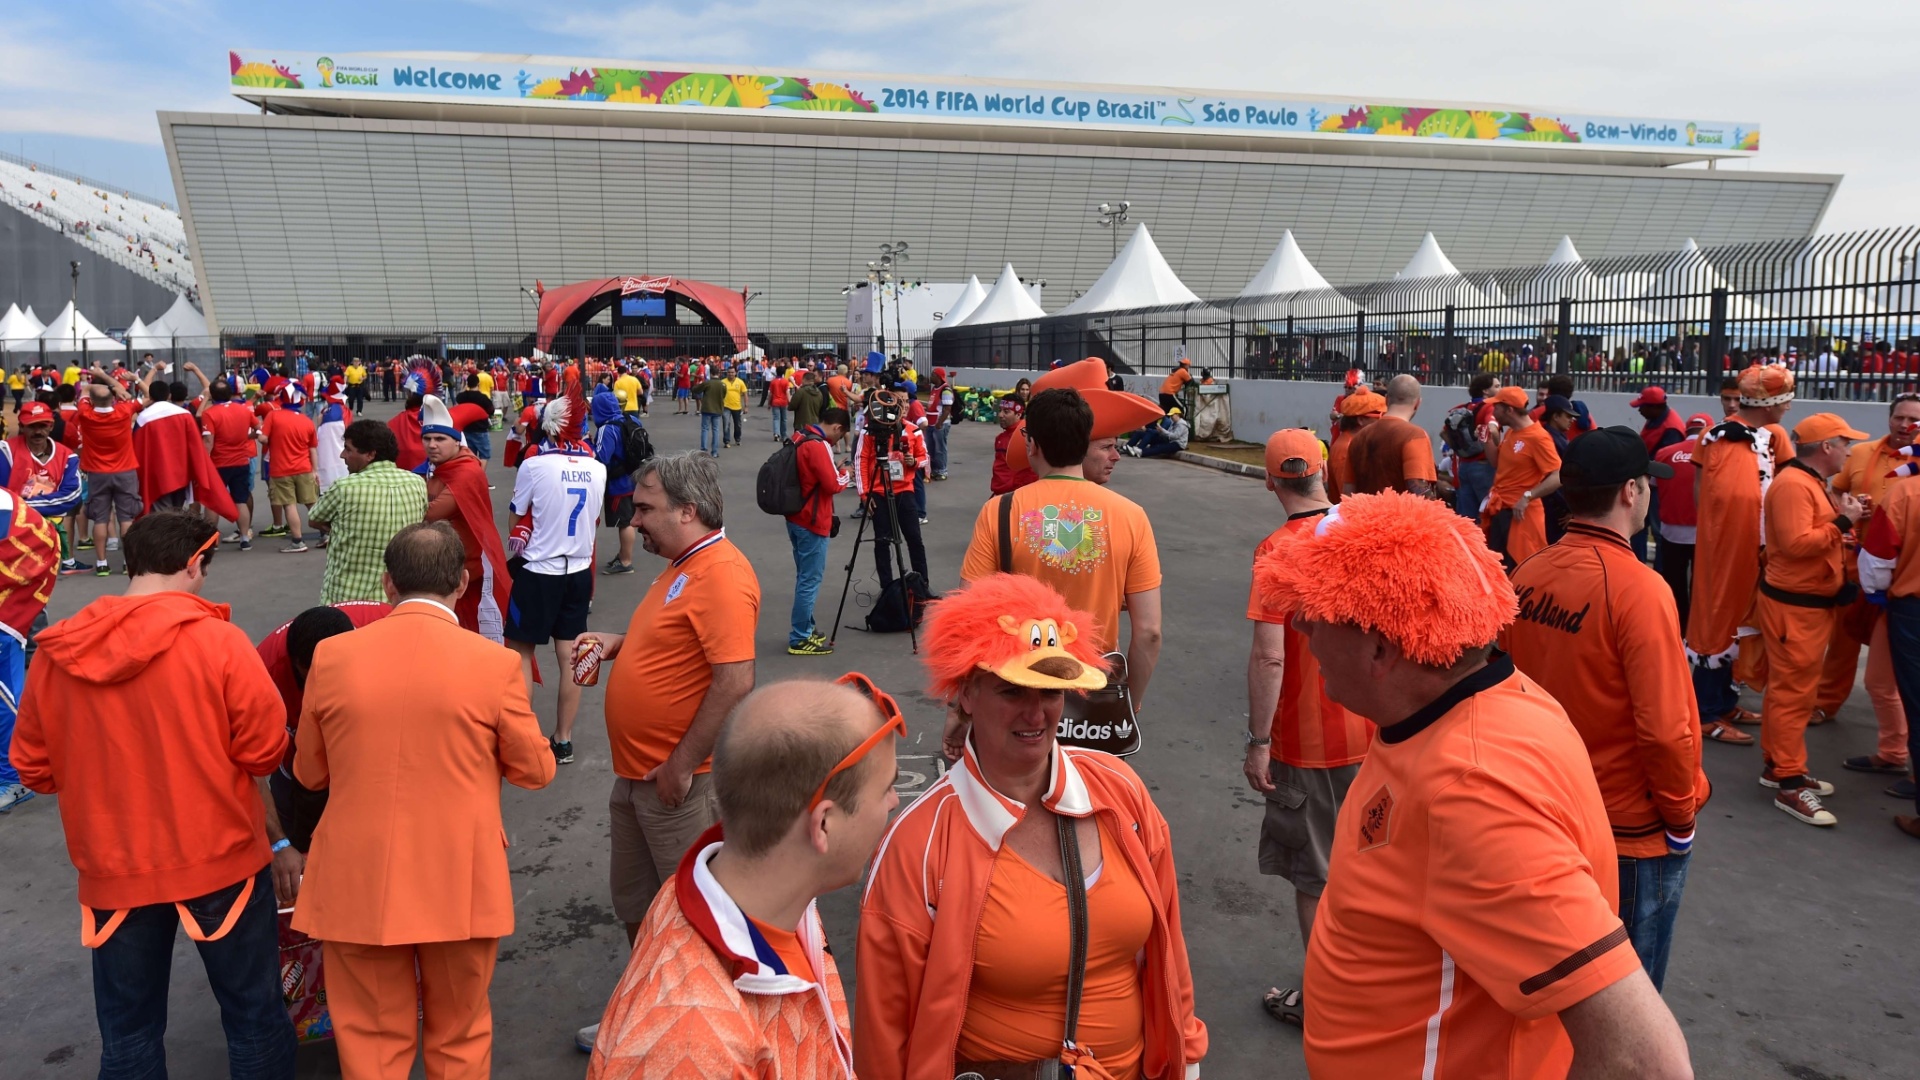 Holandeses e chilenos tomam as imediações do Itaquerão horas antes da partida